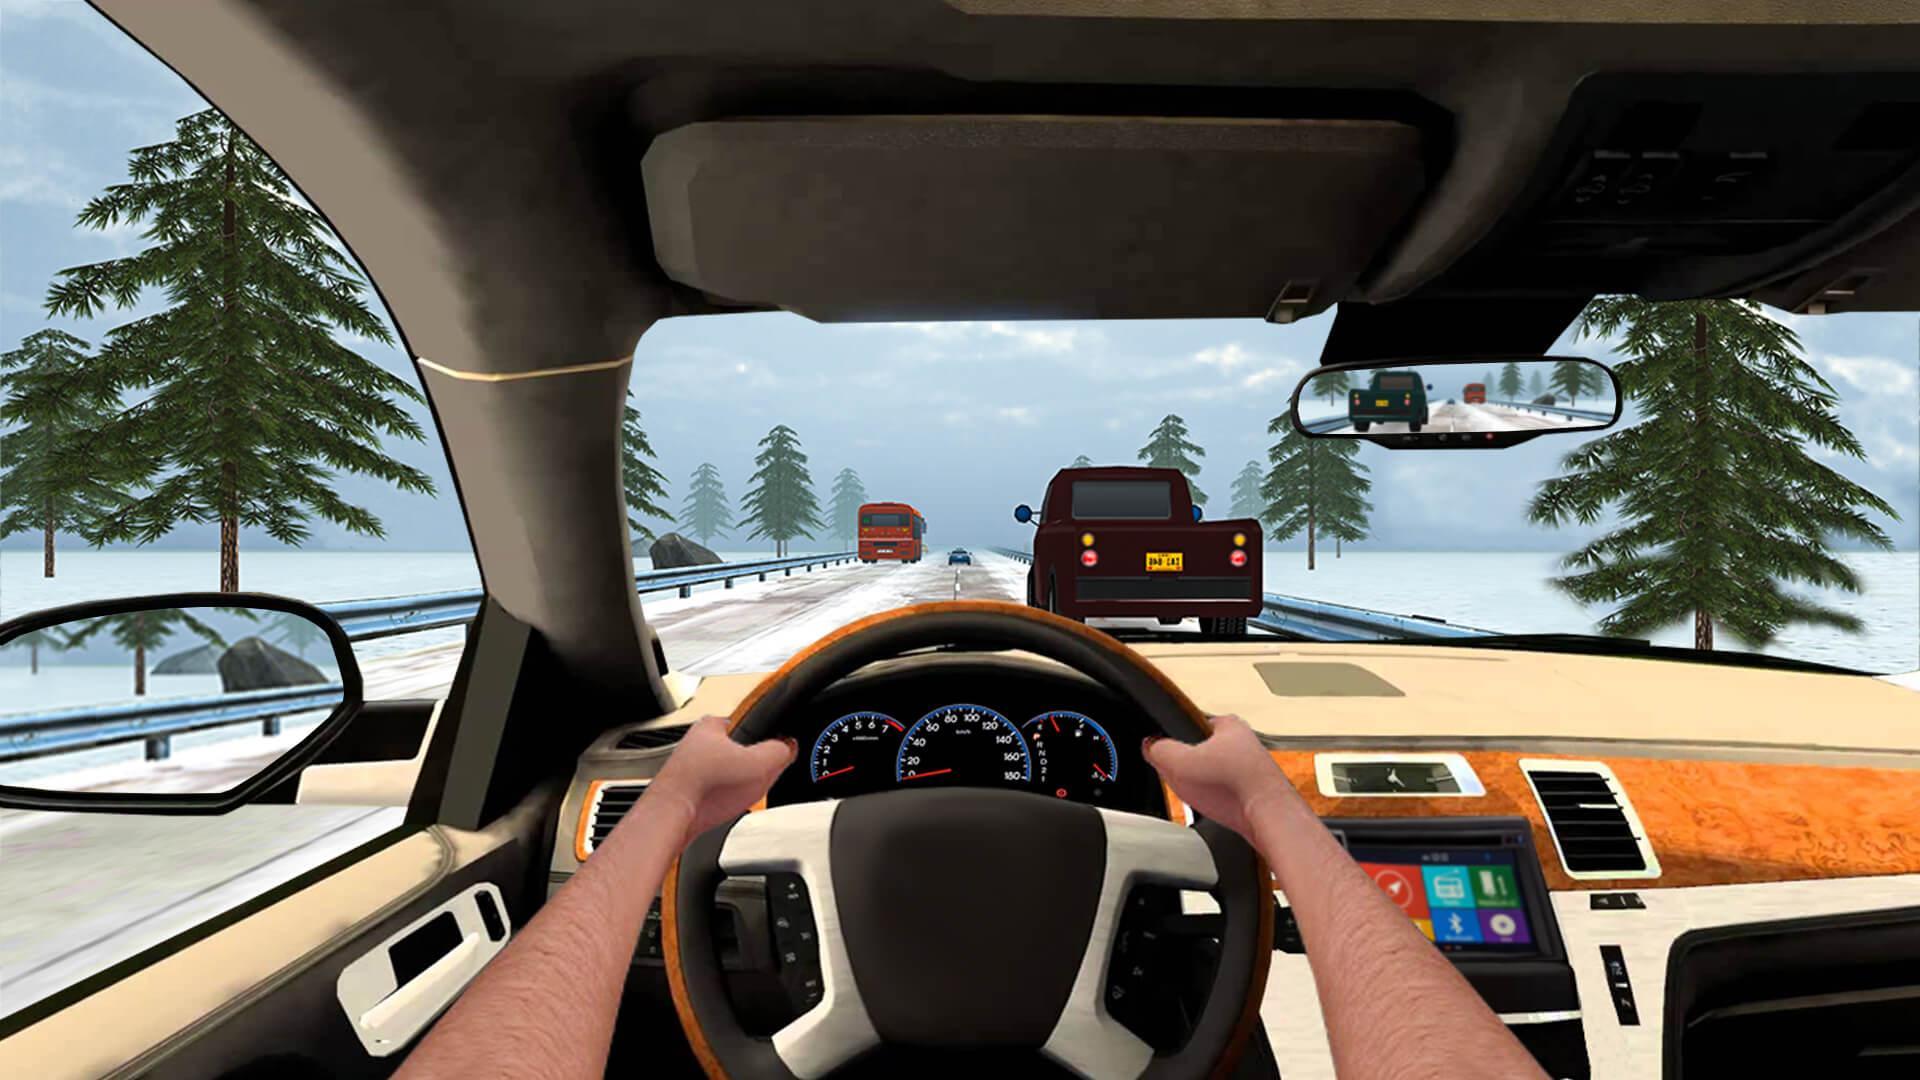 Traffic Racing In Car Driving Free Racing Games 1.2.1 Screenshot 17